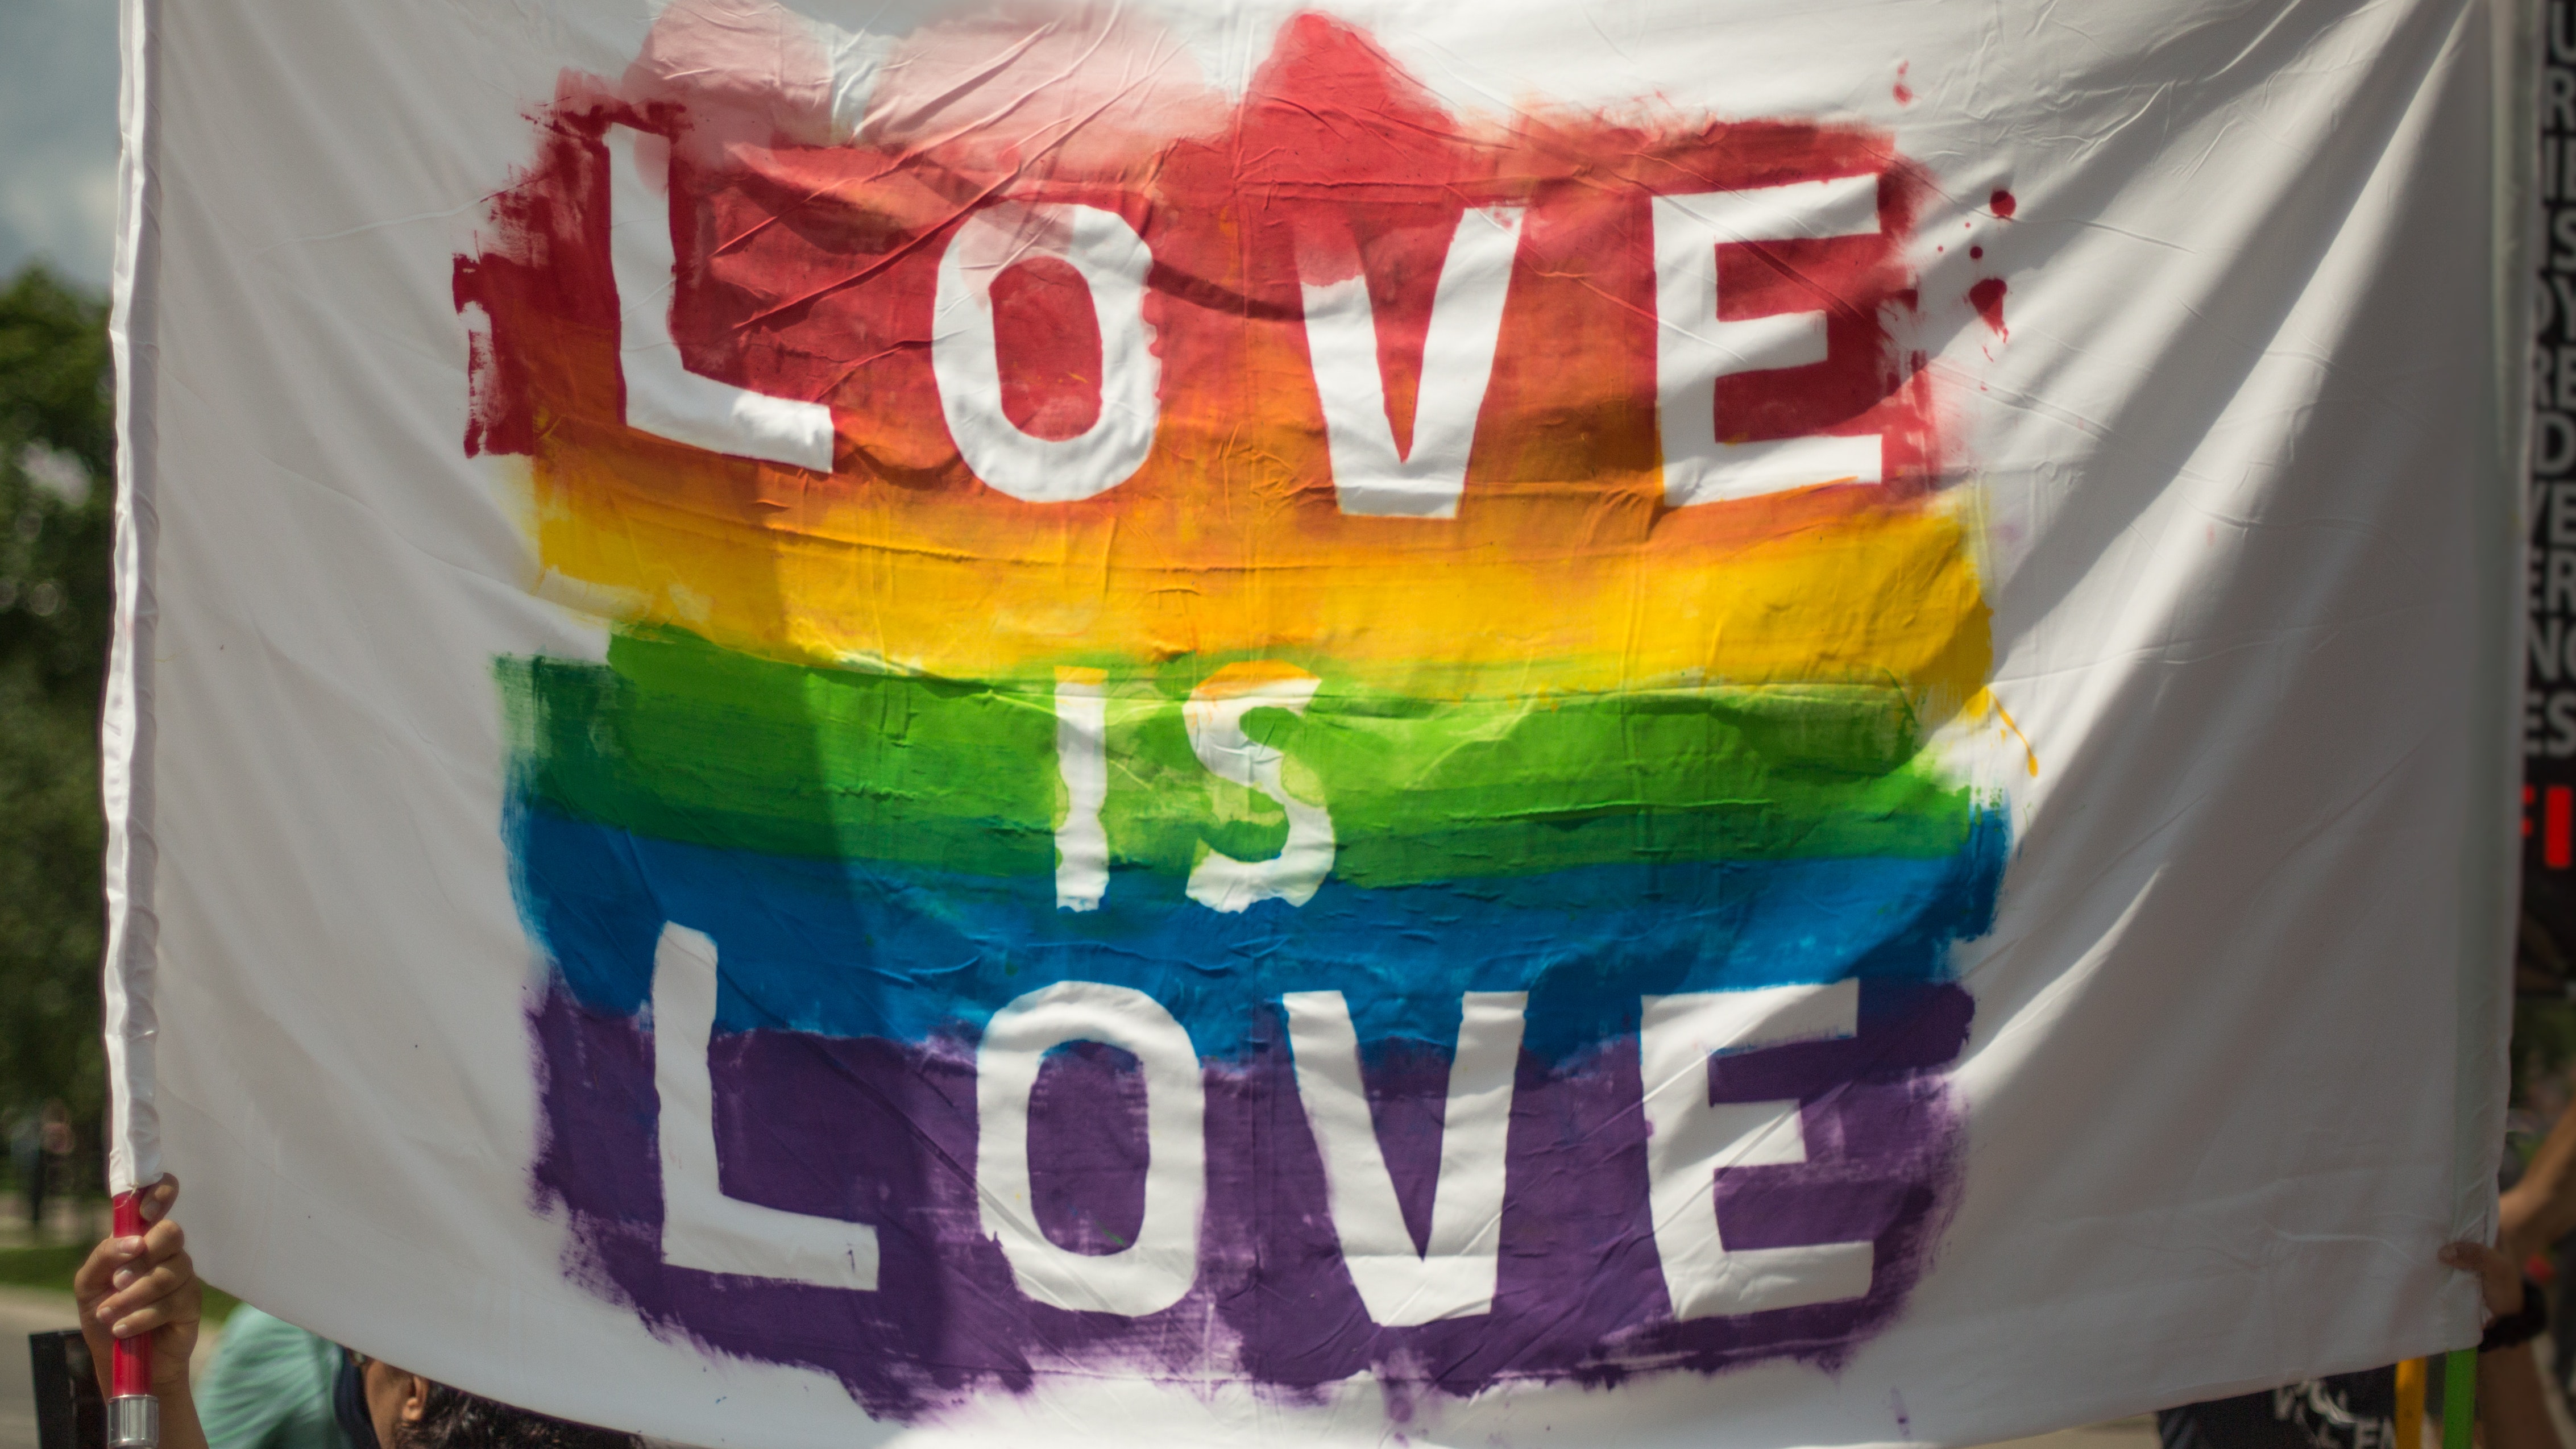 Γκάνα: Ψηφίστηκε ομόφωνα ακραίο νομοσχέδιο κατά της ΛΟΑΤΚΙ+ κοινότητας - «Η ομοφυλοφιλία δεν αποτελεί ανθρώπινο δικαίωμα»